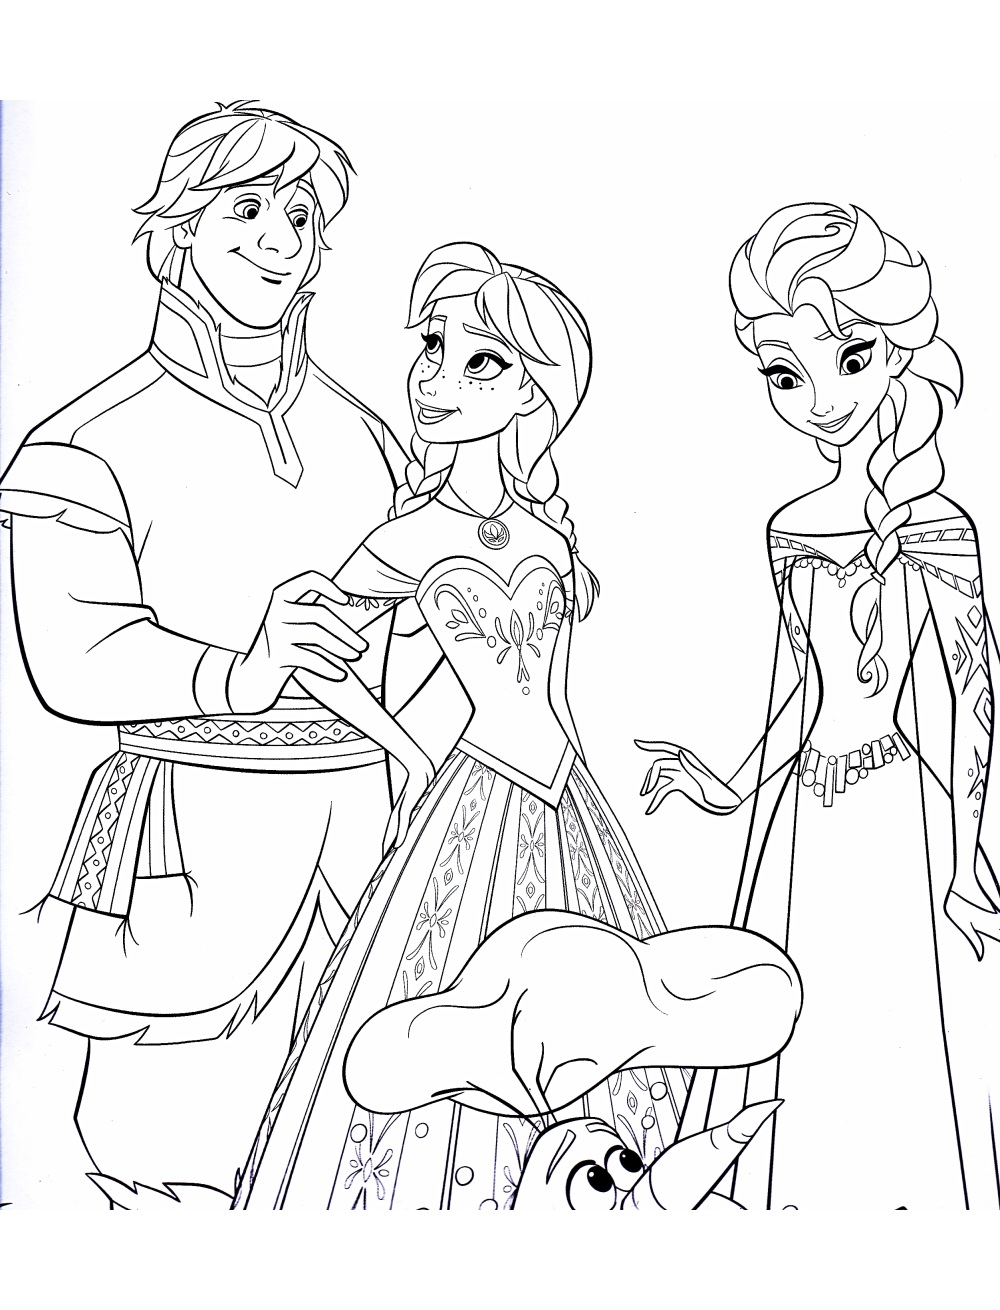 Dibujos para colorear para niños de Frozen (el Reino Del Hielo), gratis, para descargar